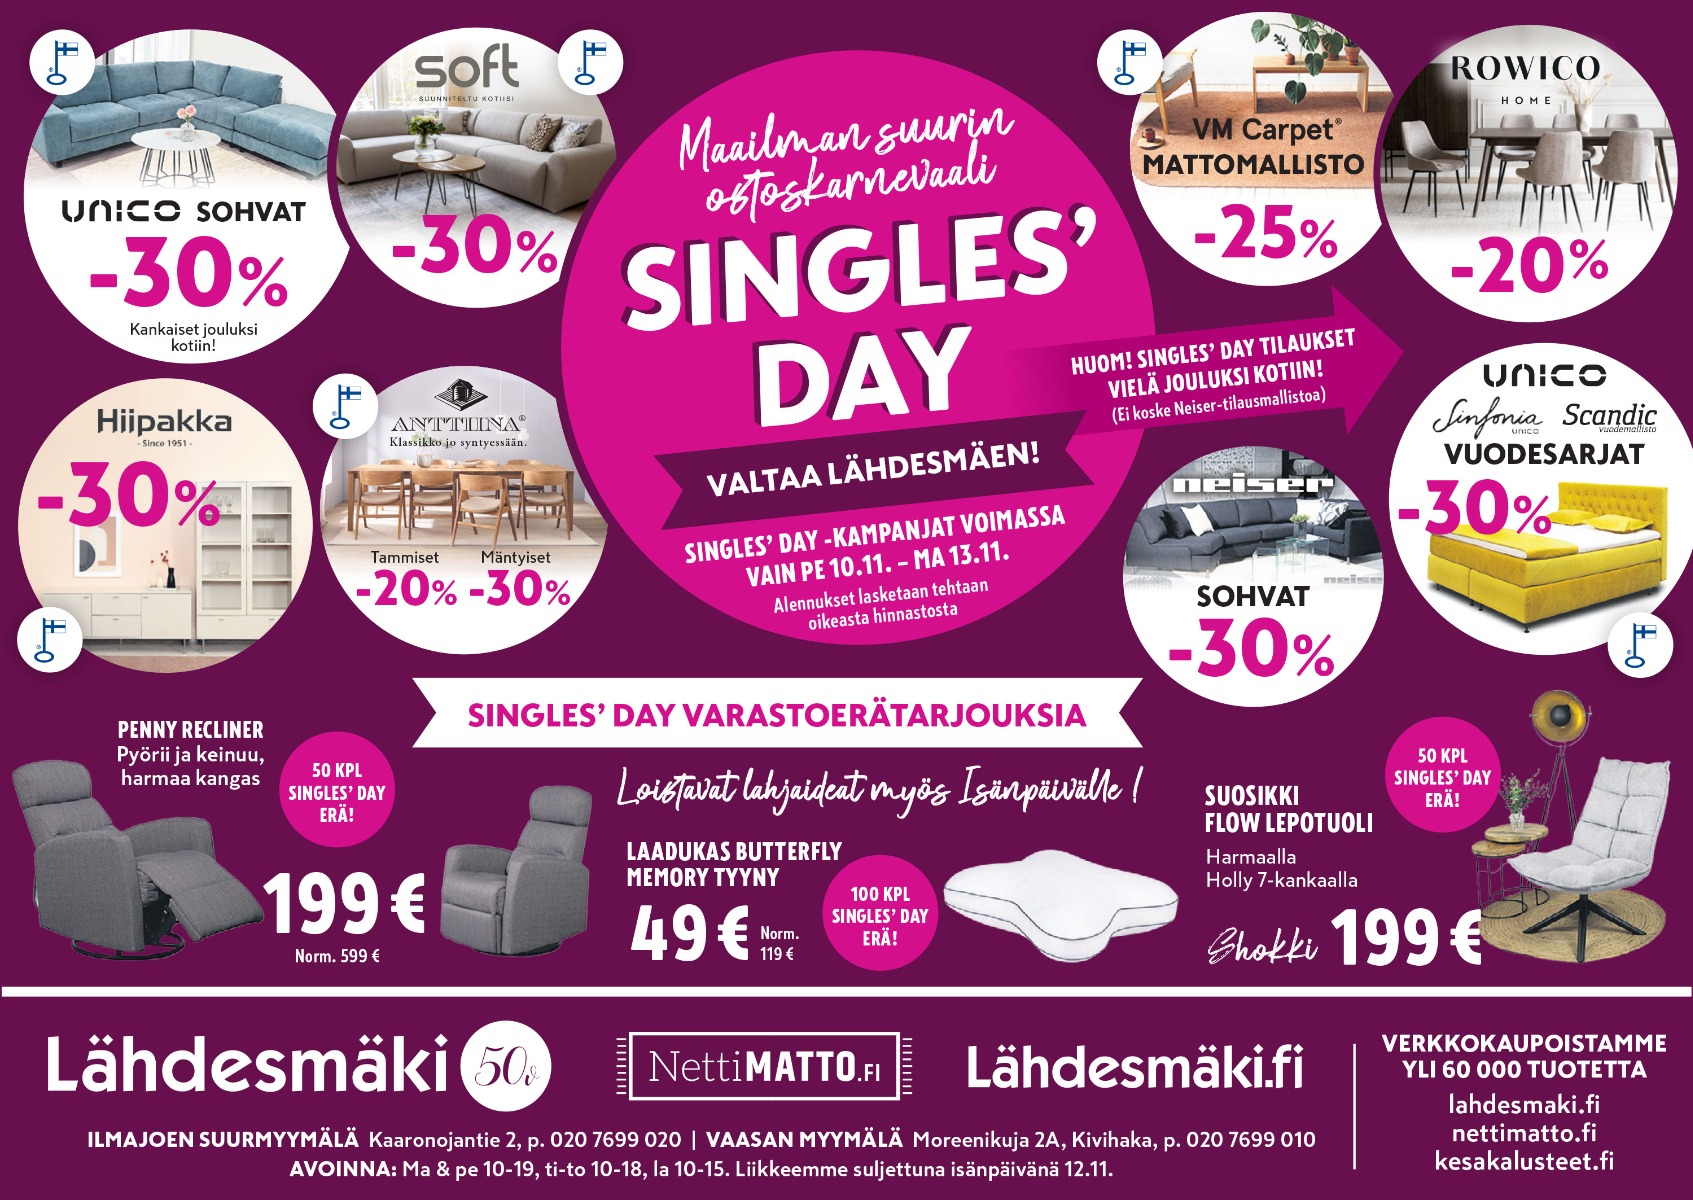 Single's Day mainos Ilkka-Pohjalaisessa pe 10.11.